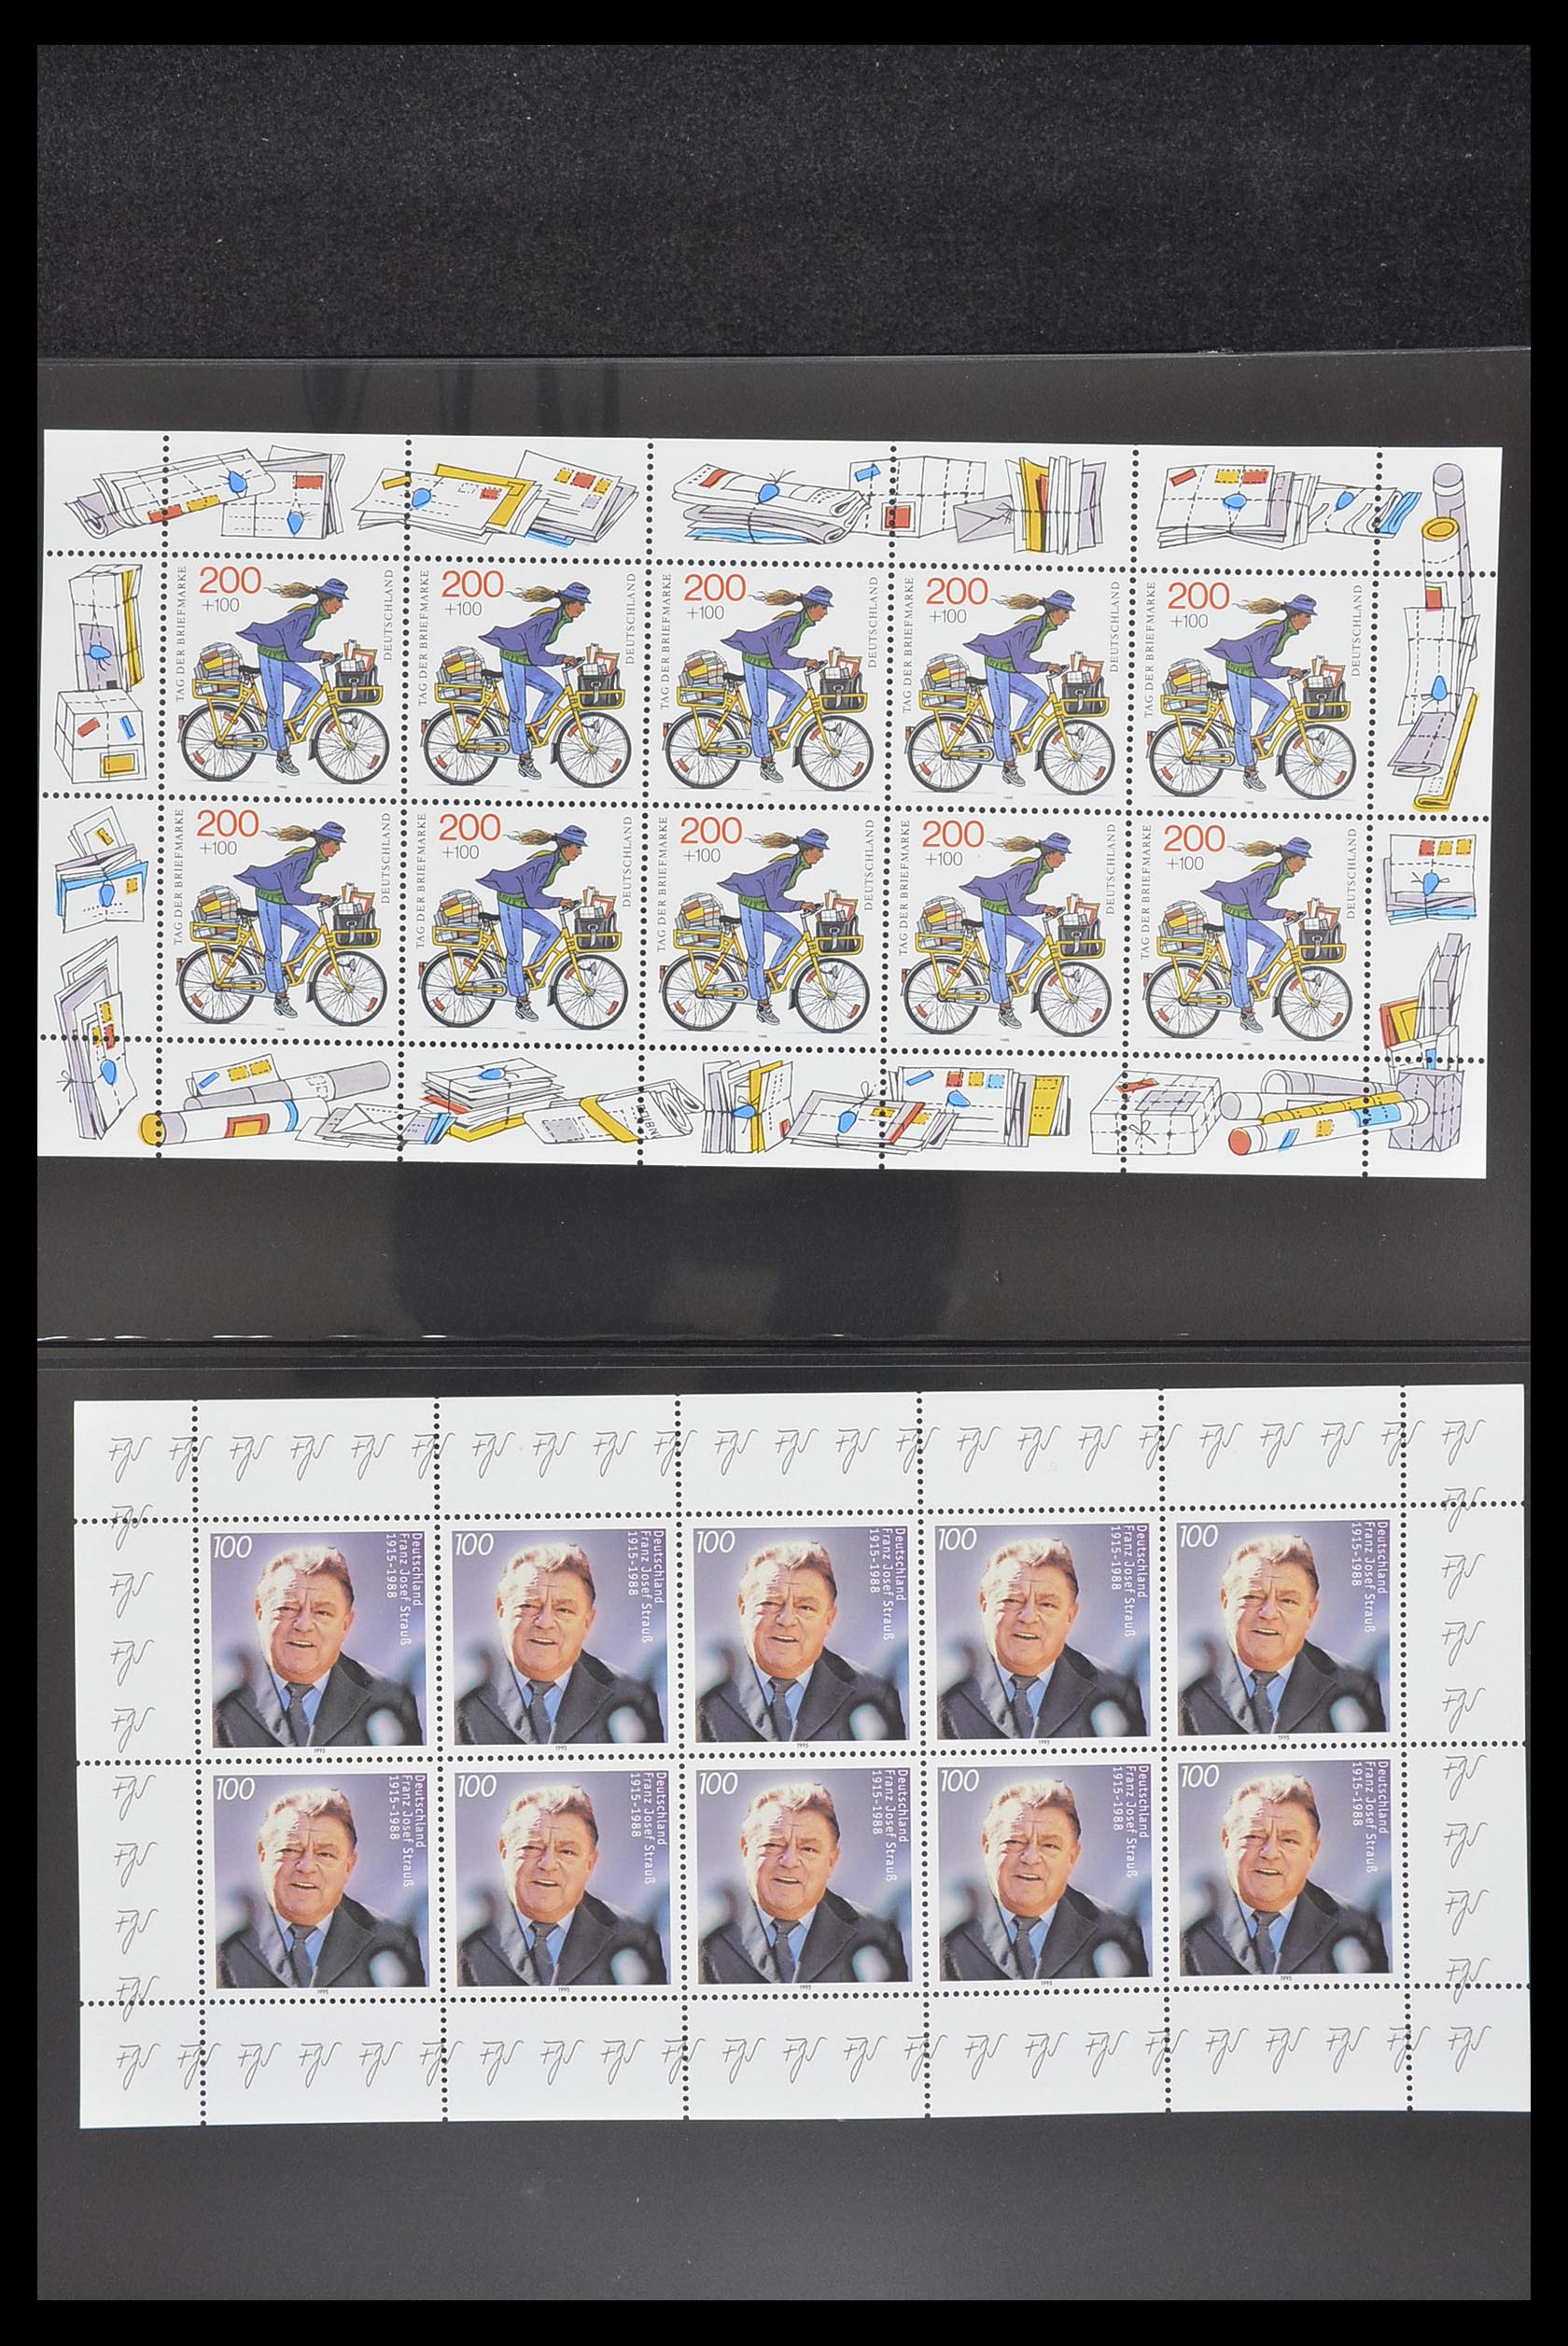 33936 029 - Stamp collection 33936 Bundespost kleinbogen 1994-2000.